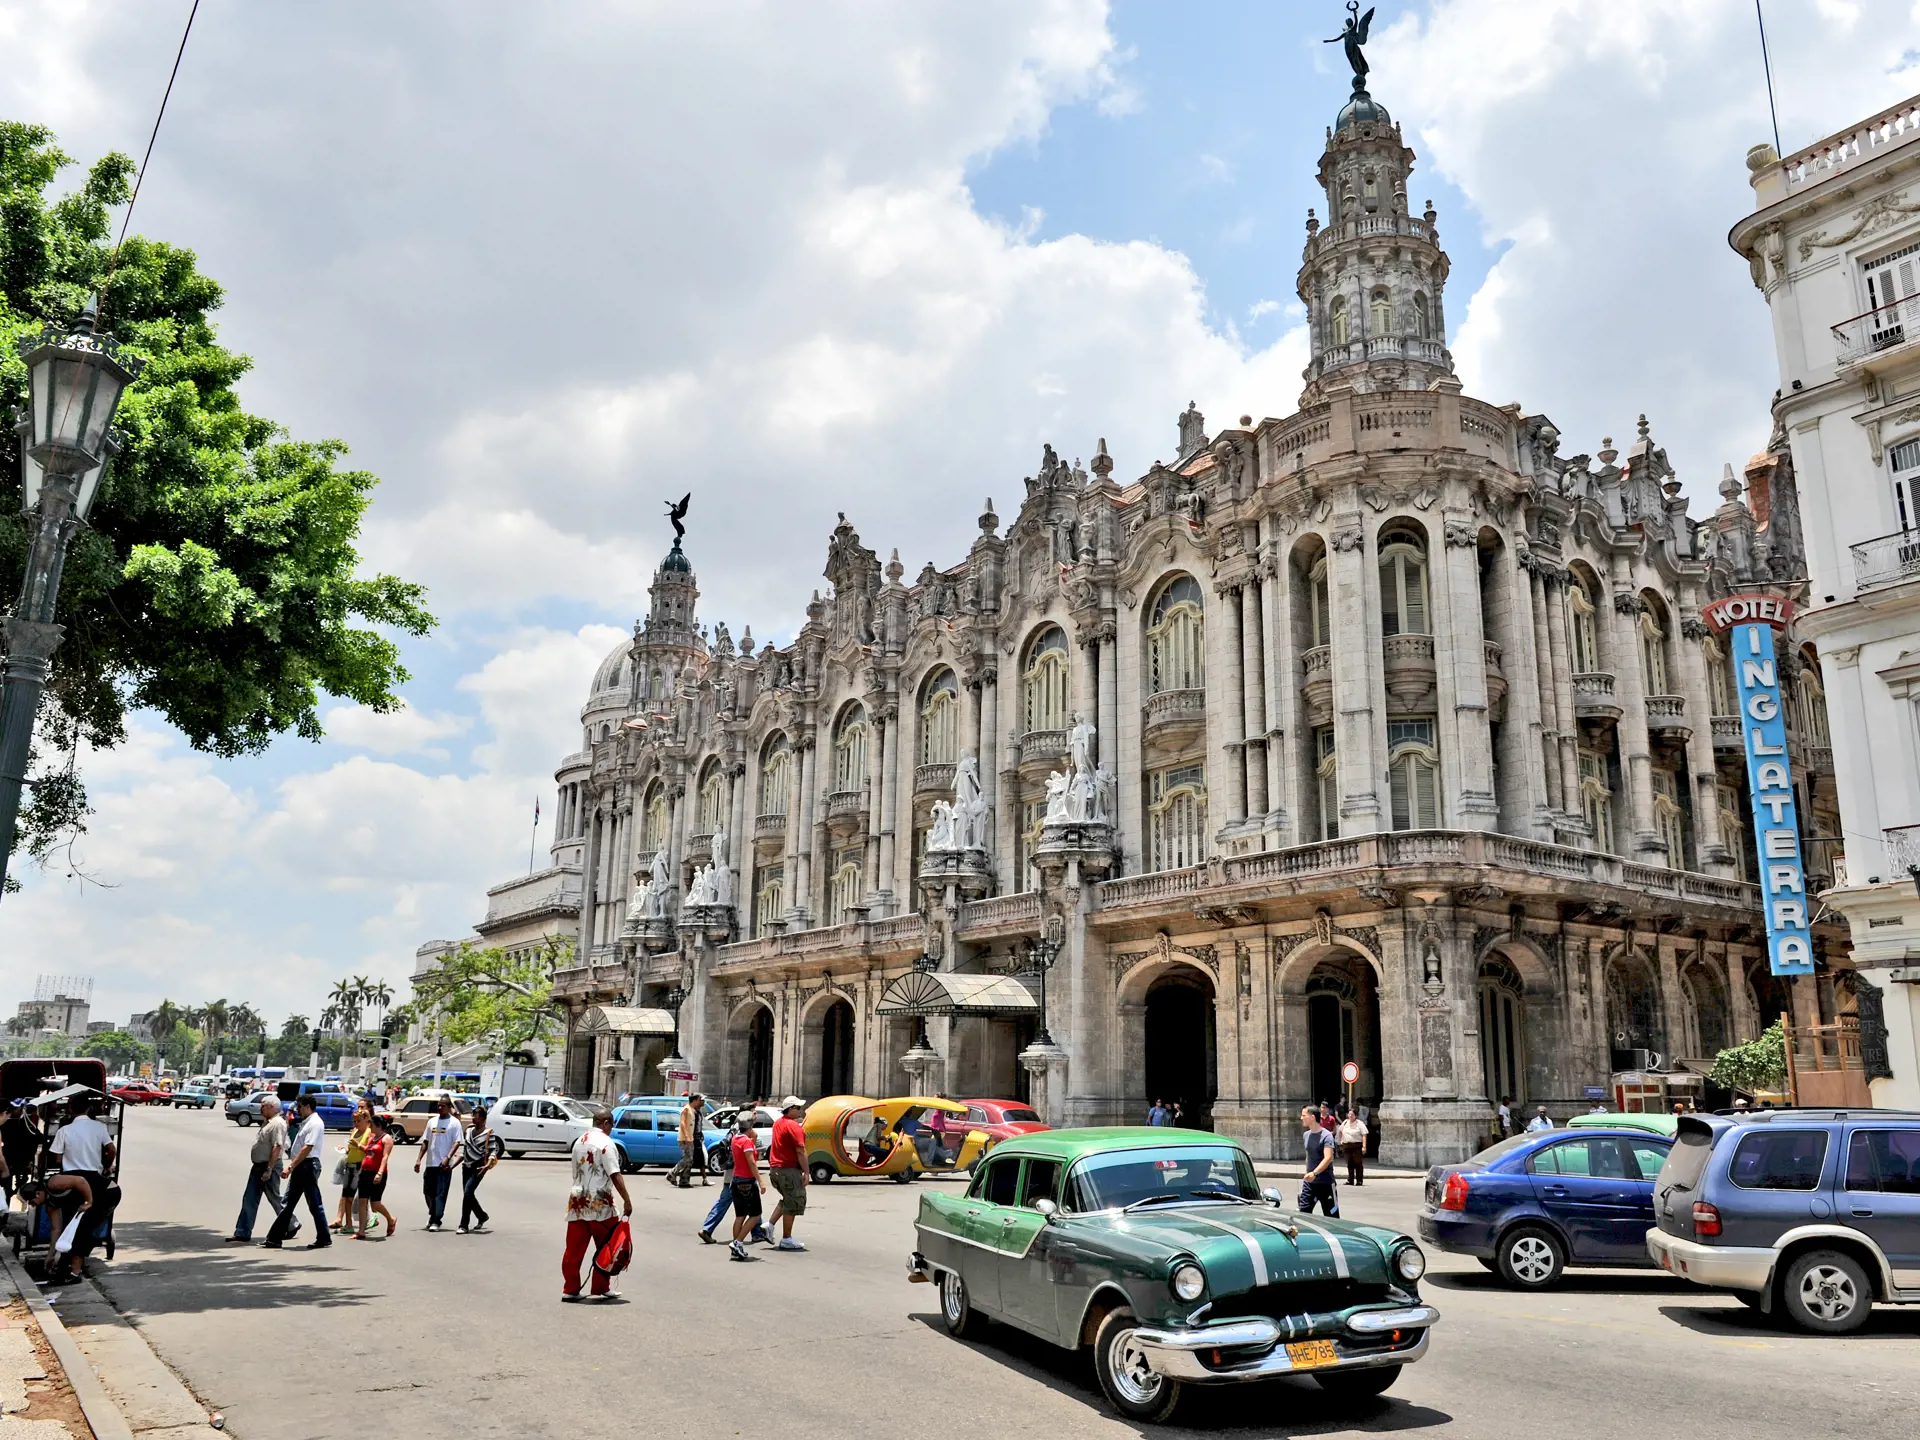 shutterstock_160699679 The Great Theatre of Havana.jpg